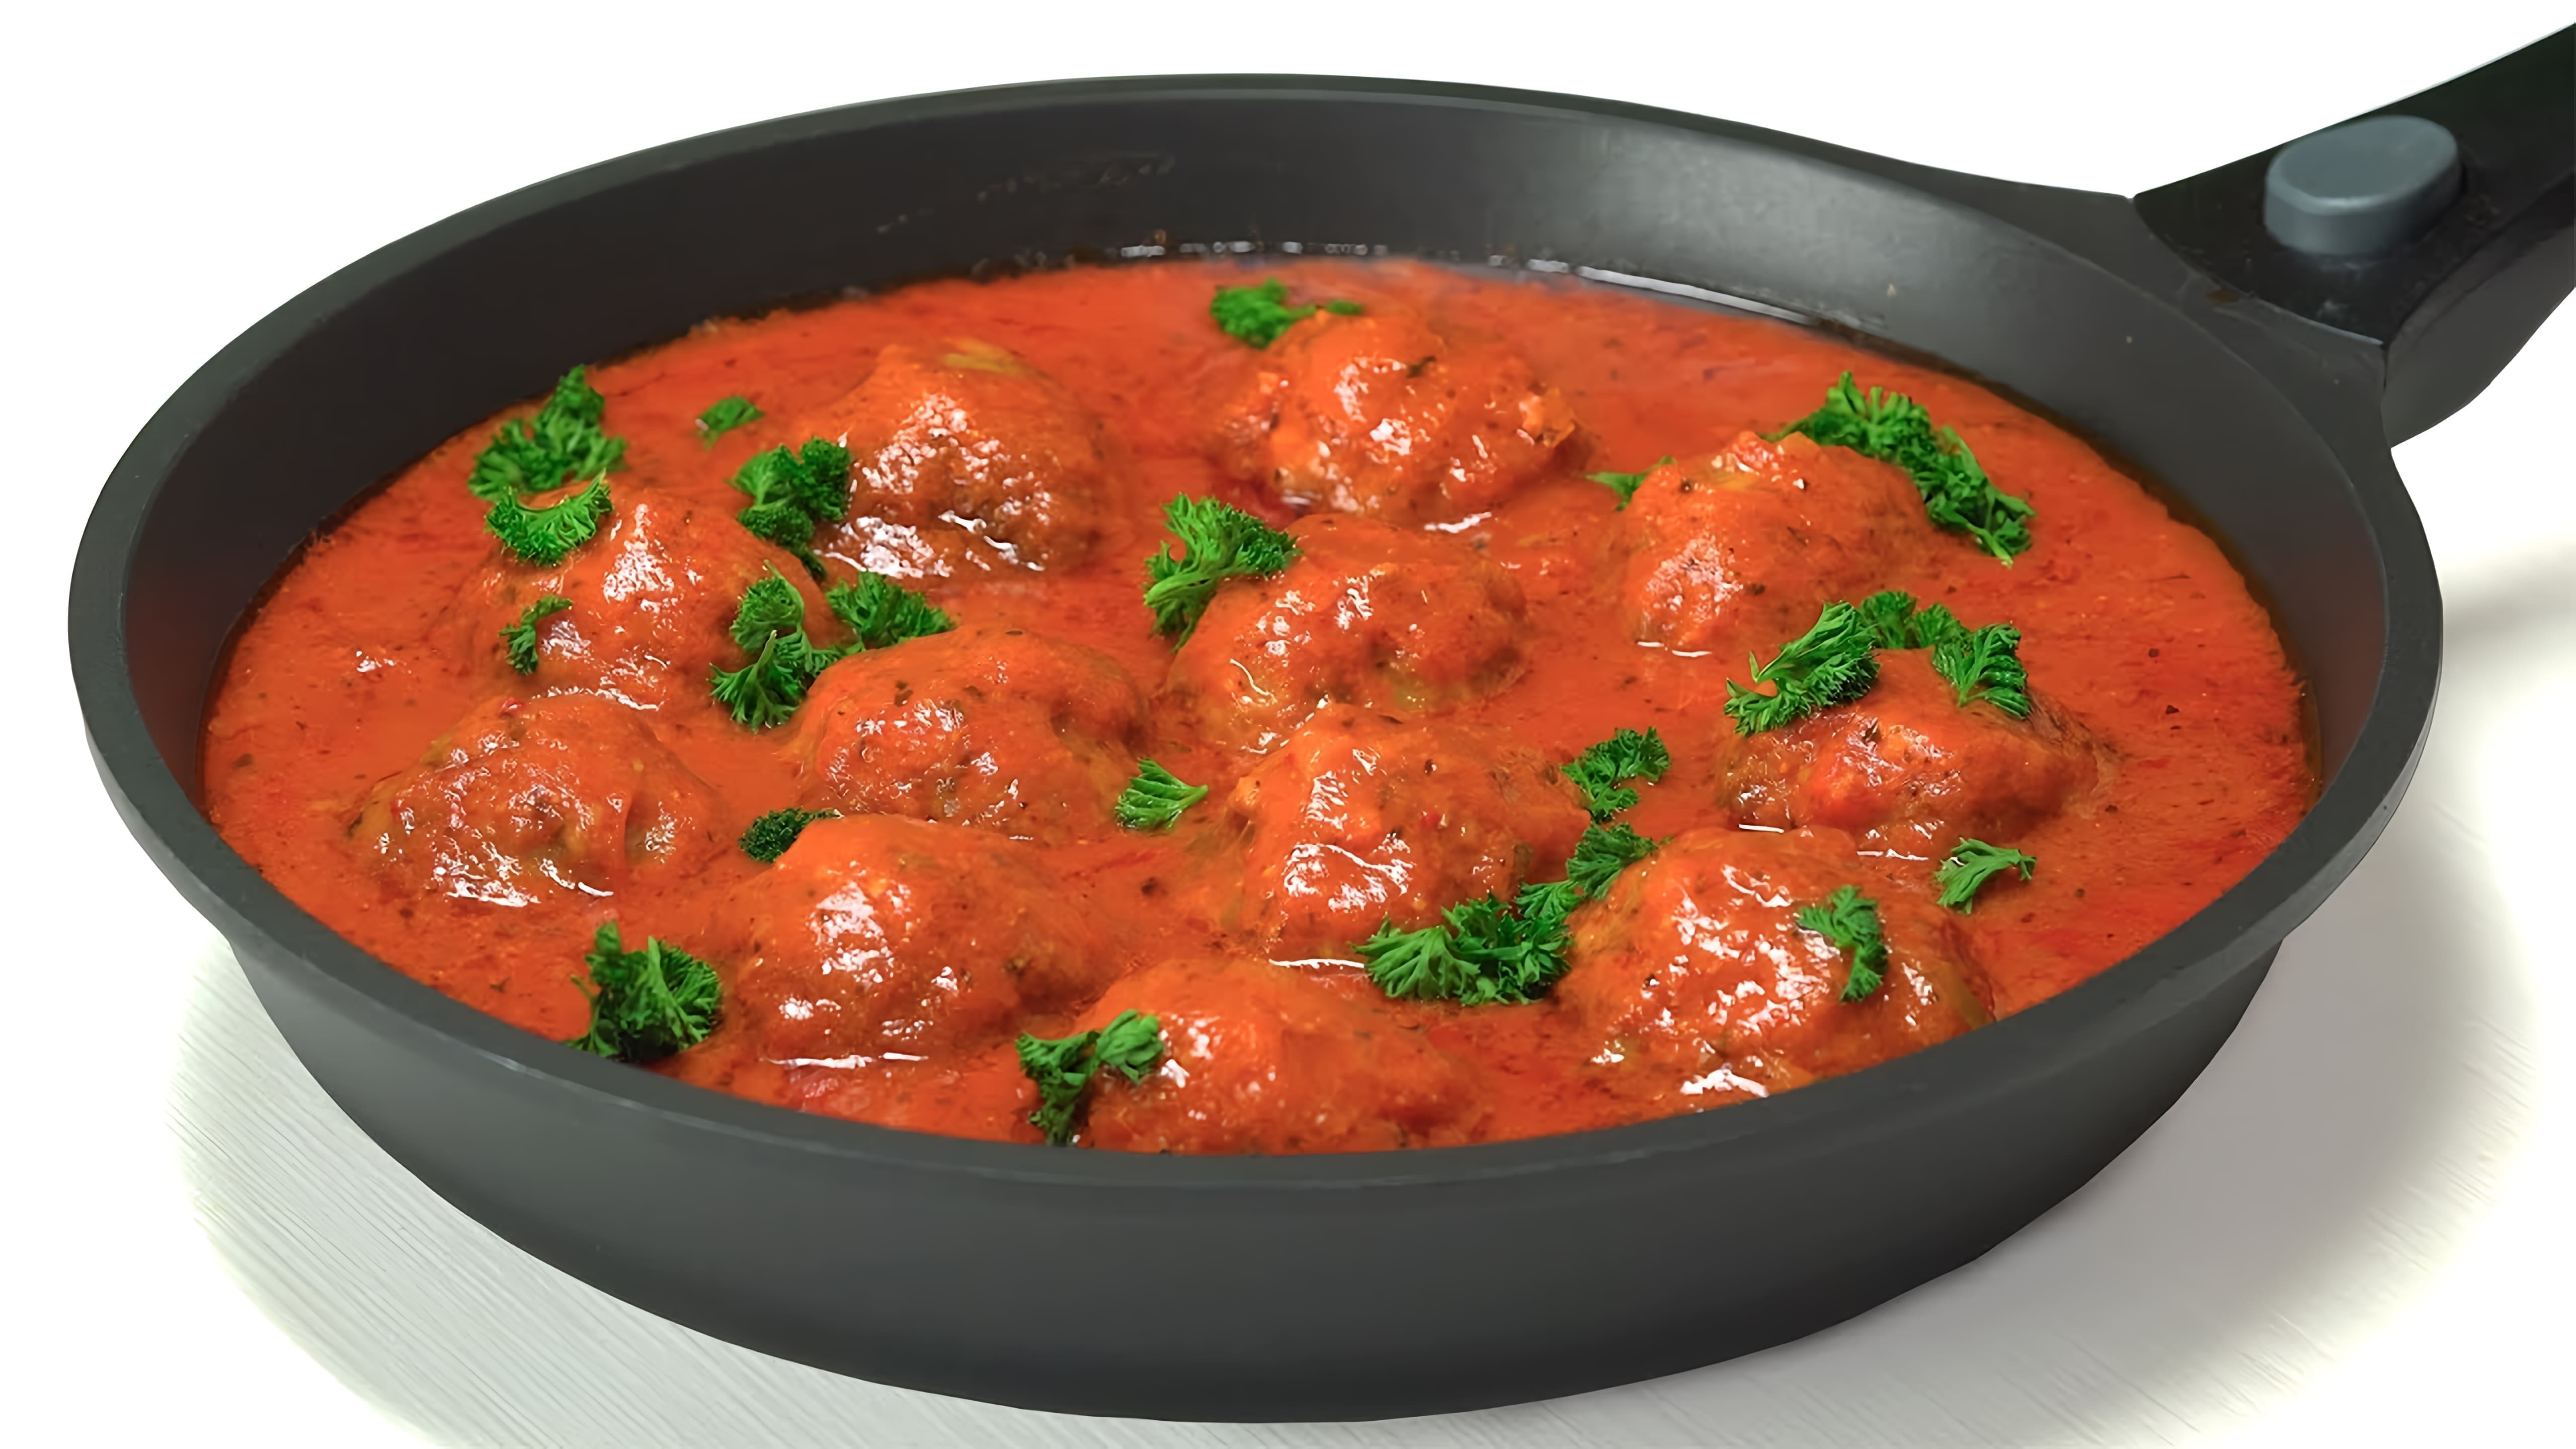 В данном видео демонстрируется рецепт приготовления тефтелей в томатном соусе